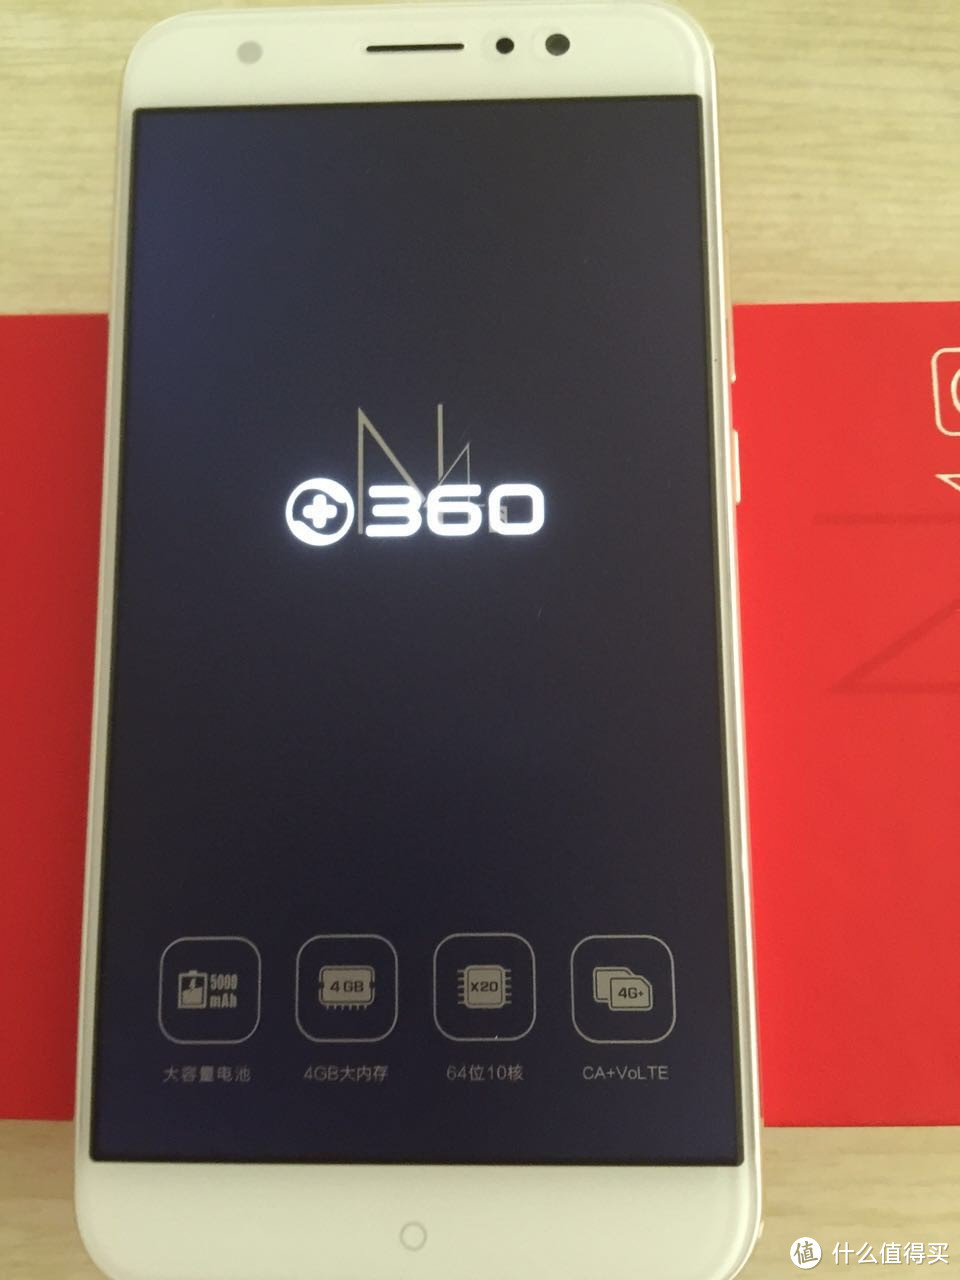 #一周热征#七夕# 来之不易的情人节礼物 — 奇虎360 N4S 智能手机